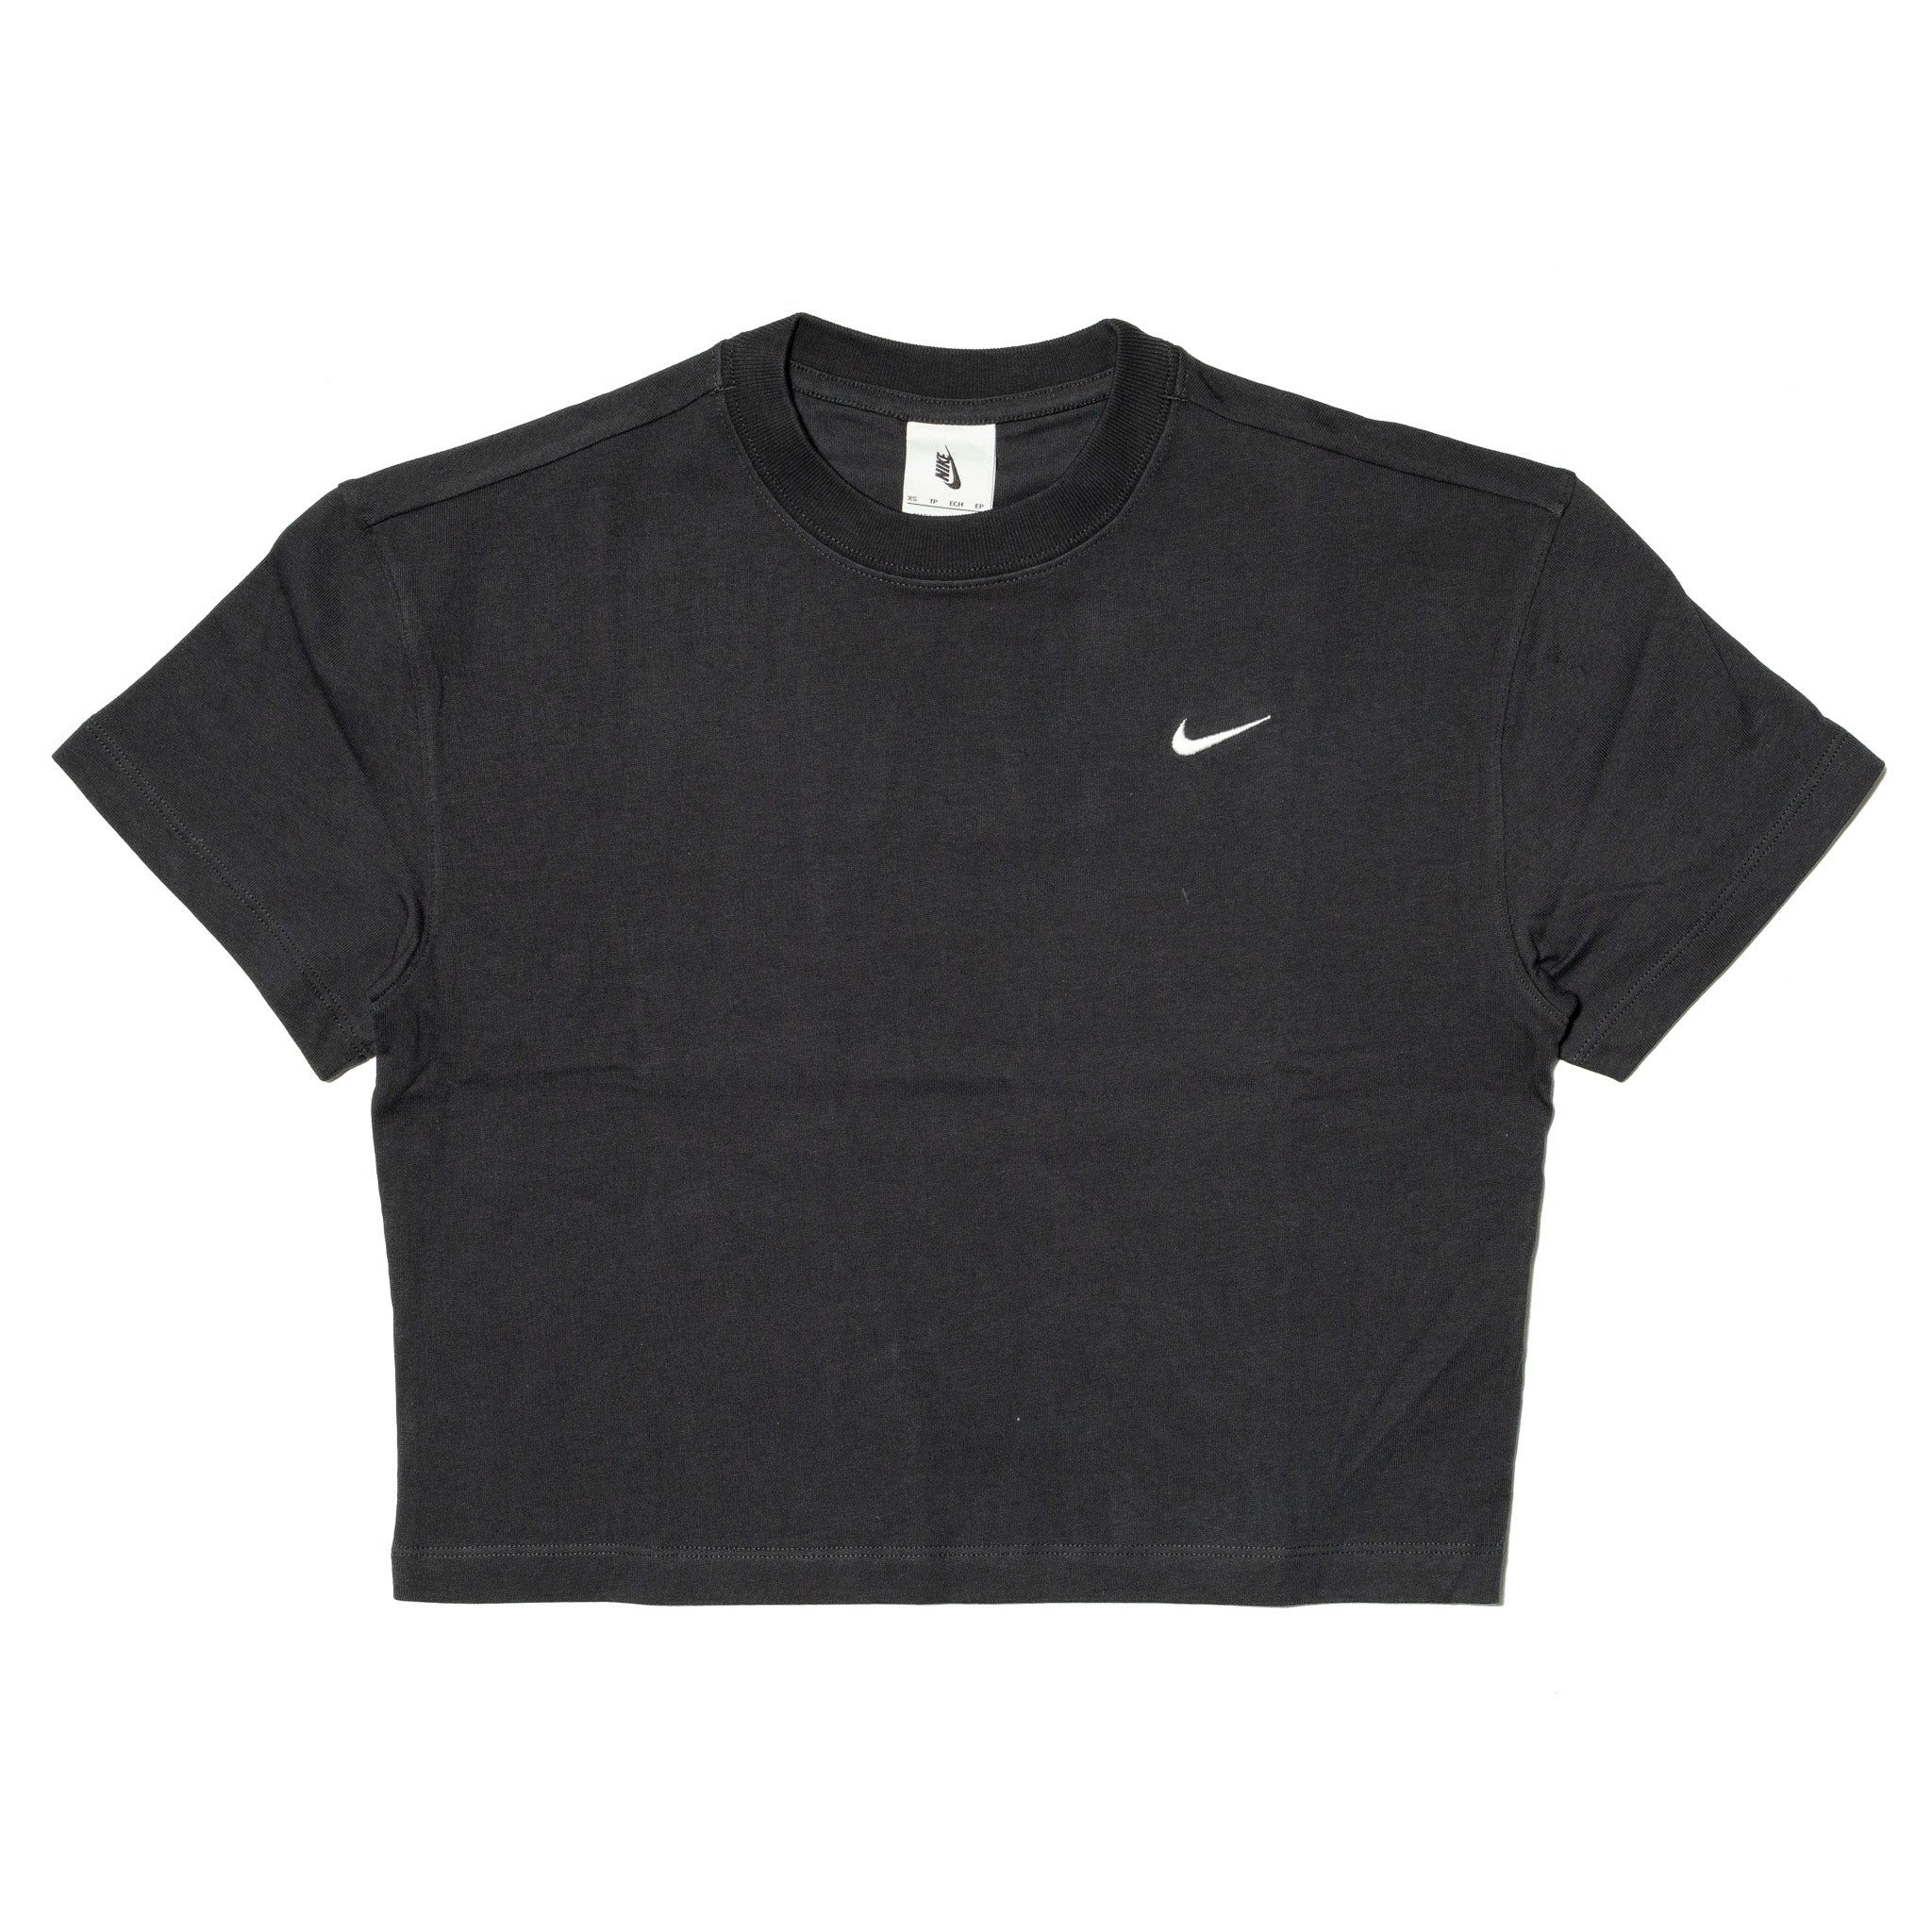 Women's NikeLab Crop T-Shirt 'Black'